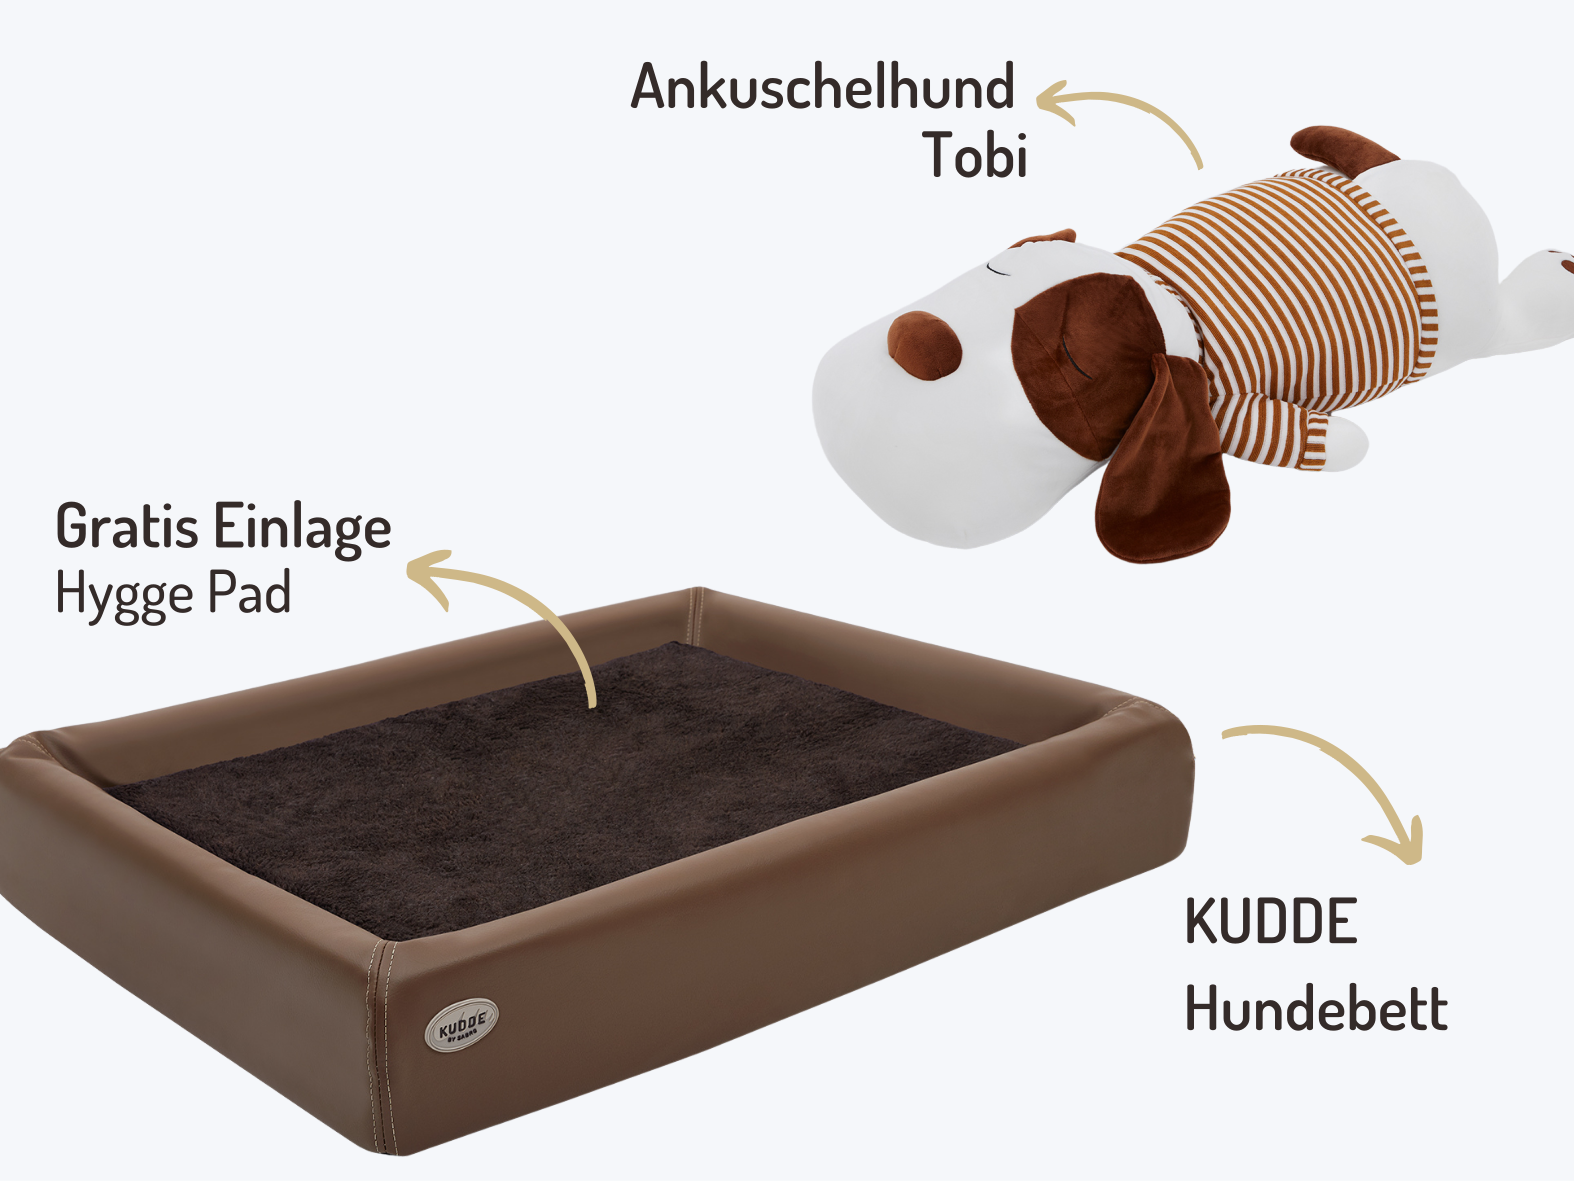 Buddy-Set | KUDDE Hundebett + Ankuschelhund